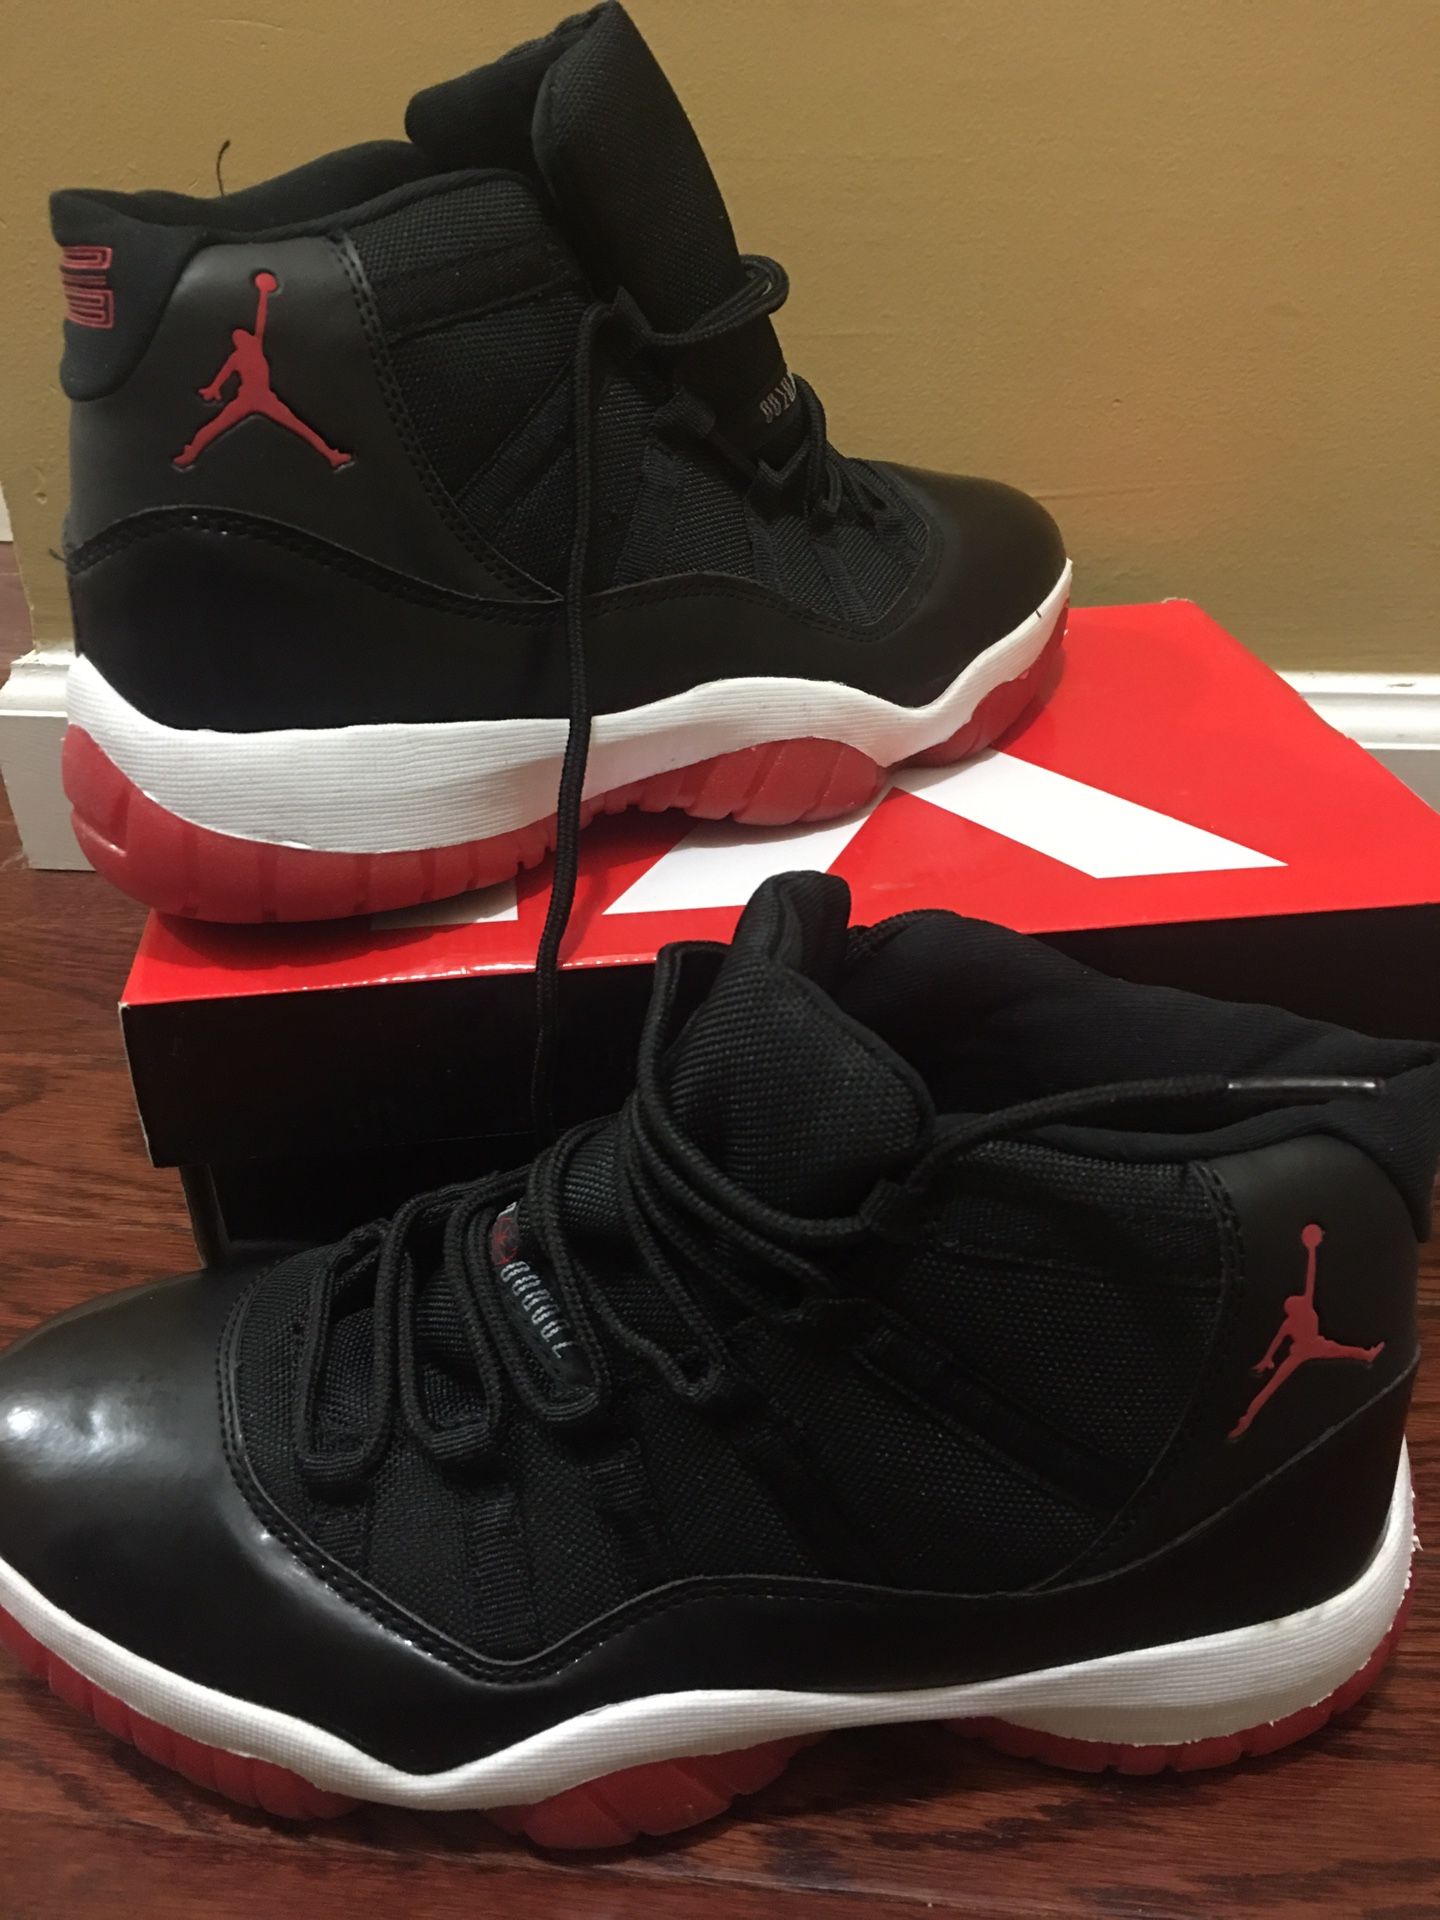 Michael Jordan’s shoes size 91/2 for men